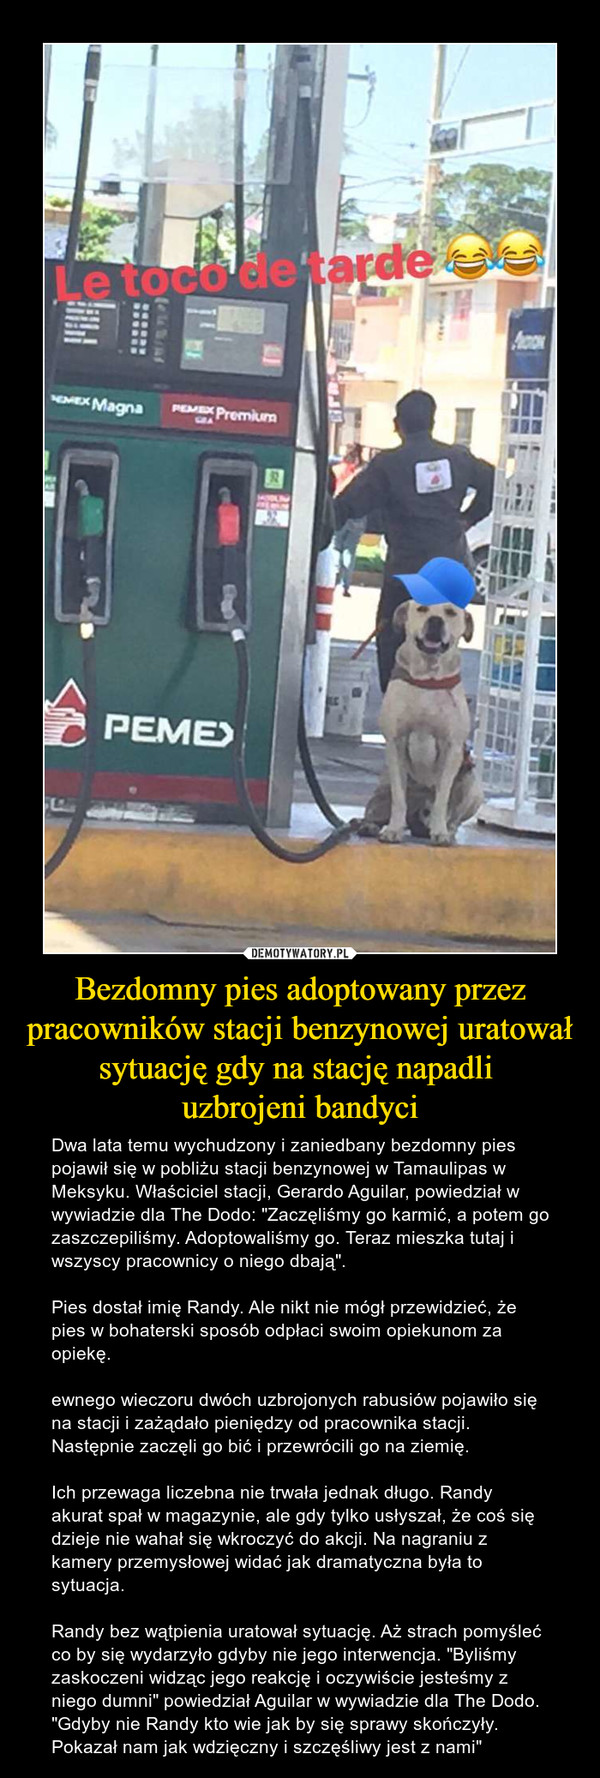 Bezdomny pies adoptowany przez pracowników stacji benzynowej uratował sytuację gdy na stację napadli 
uzbrojeni bandyci